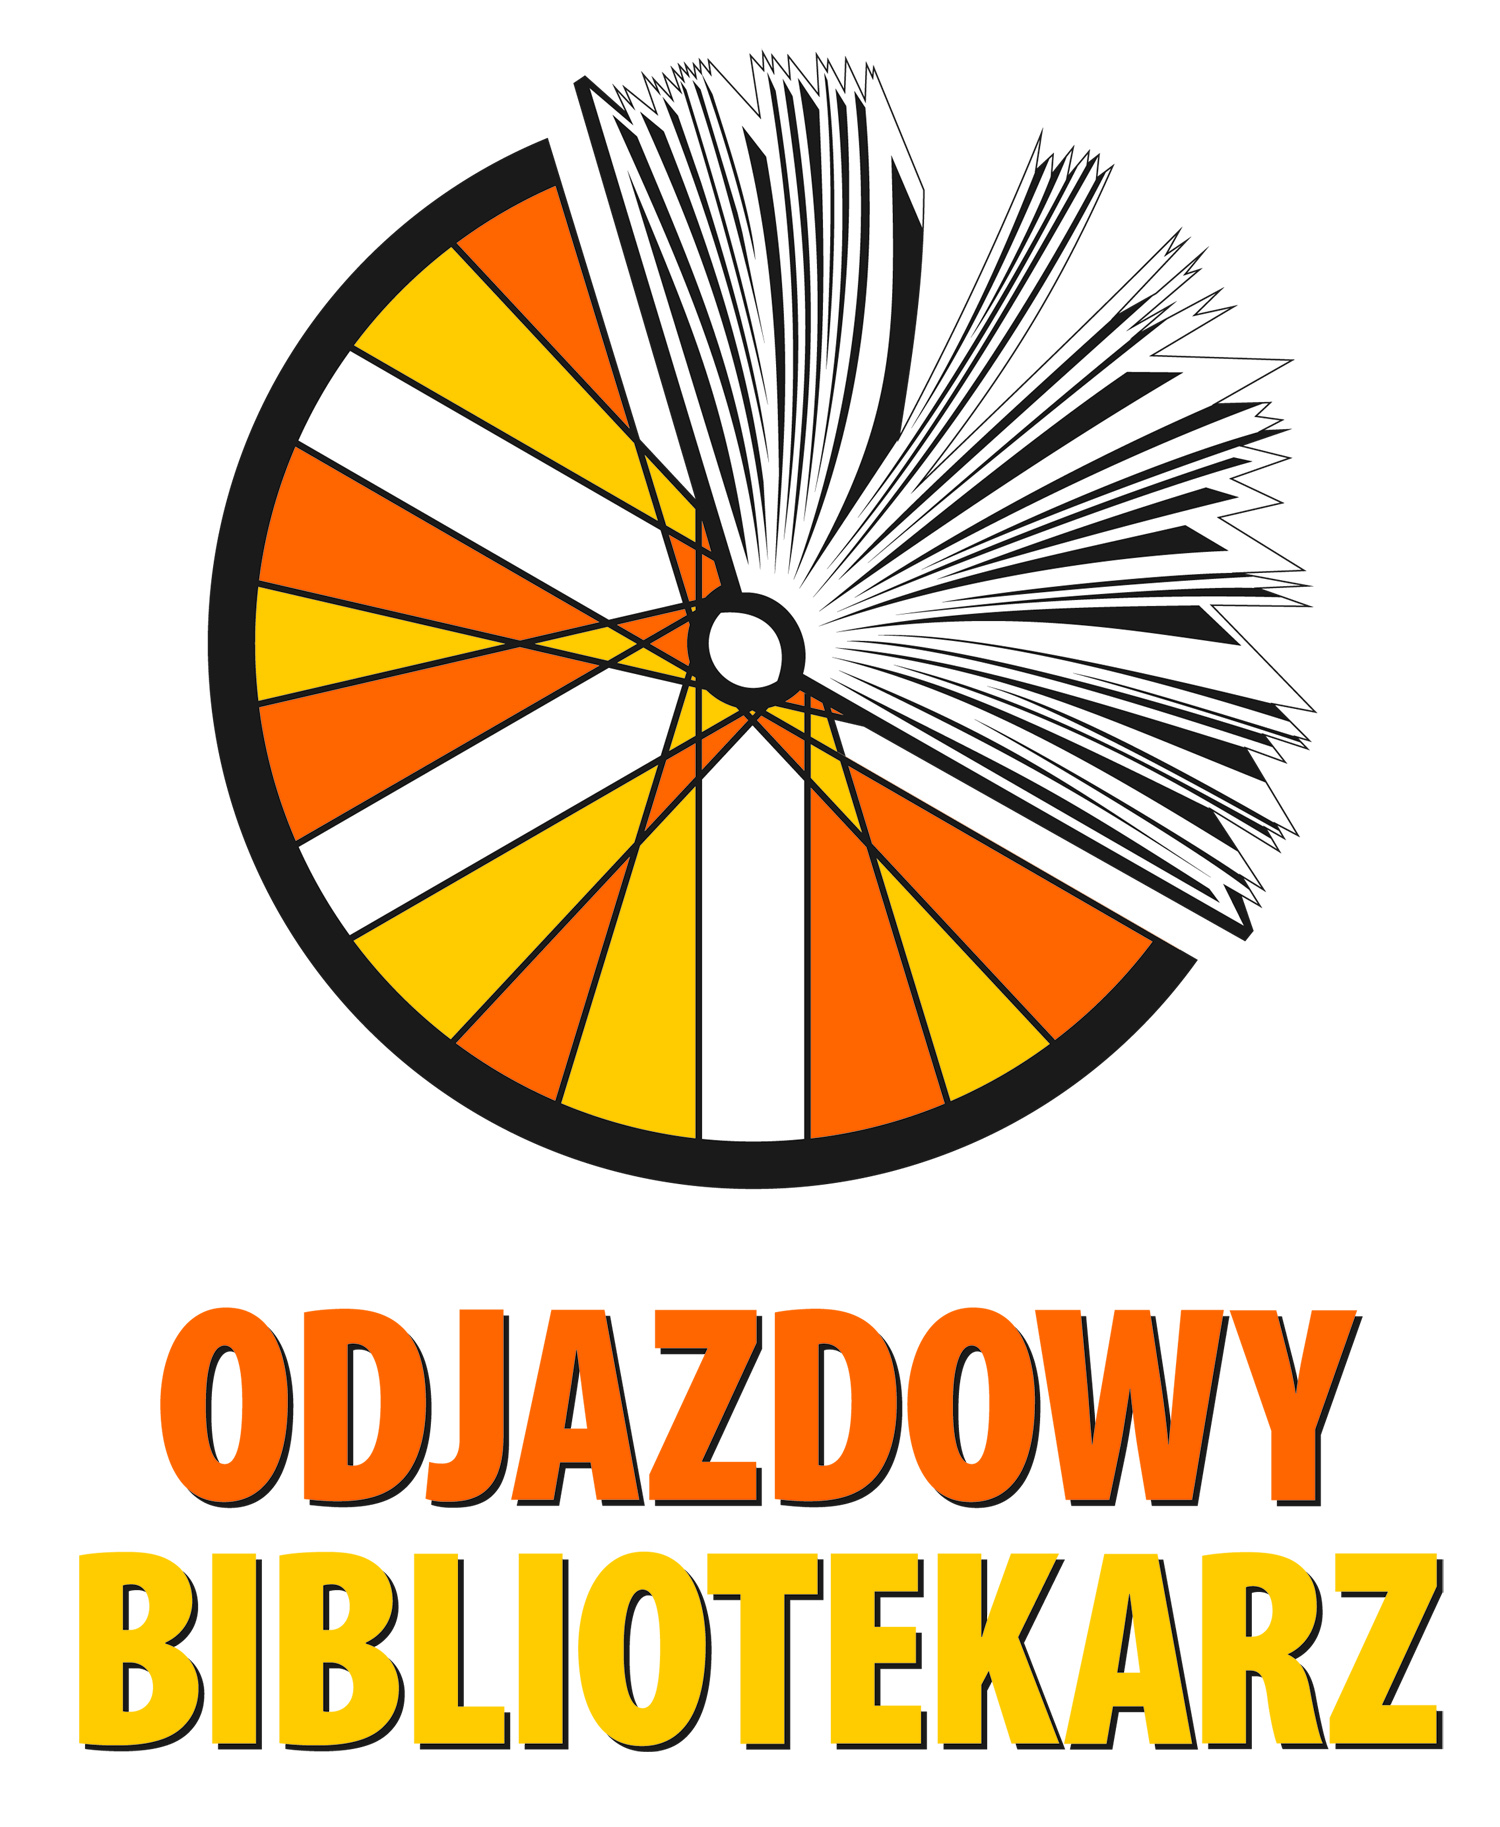 Odjazdowy Bibliotekarz 2013 w Szczecinie